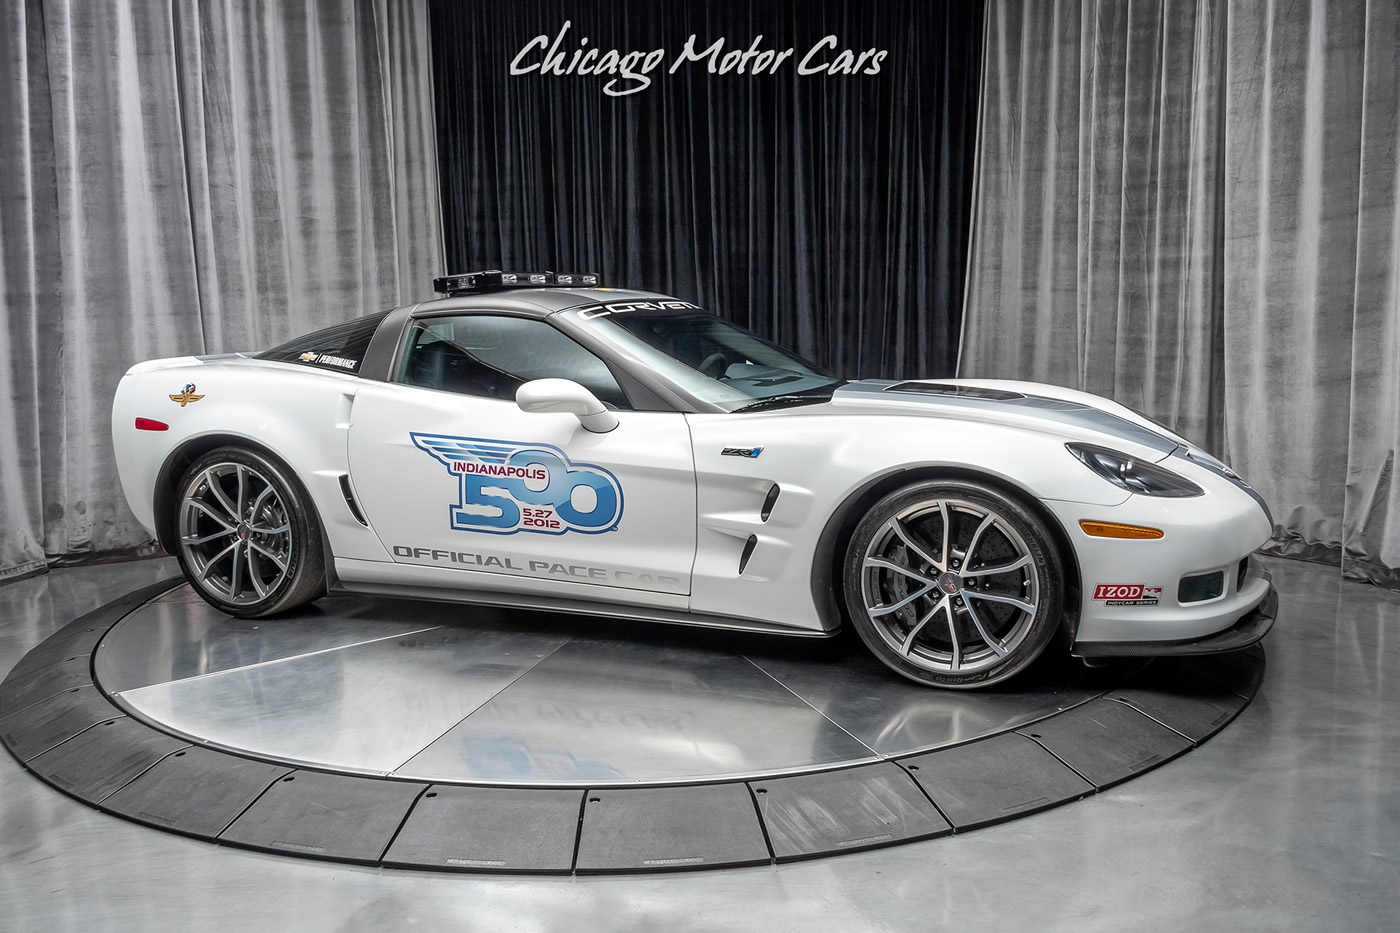 2013 Corvette ZR1 Indianapolis 500 Pace Car - VIN 1G1Y62DT9D5800024